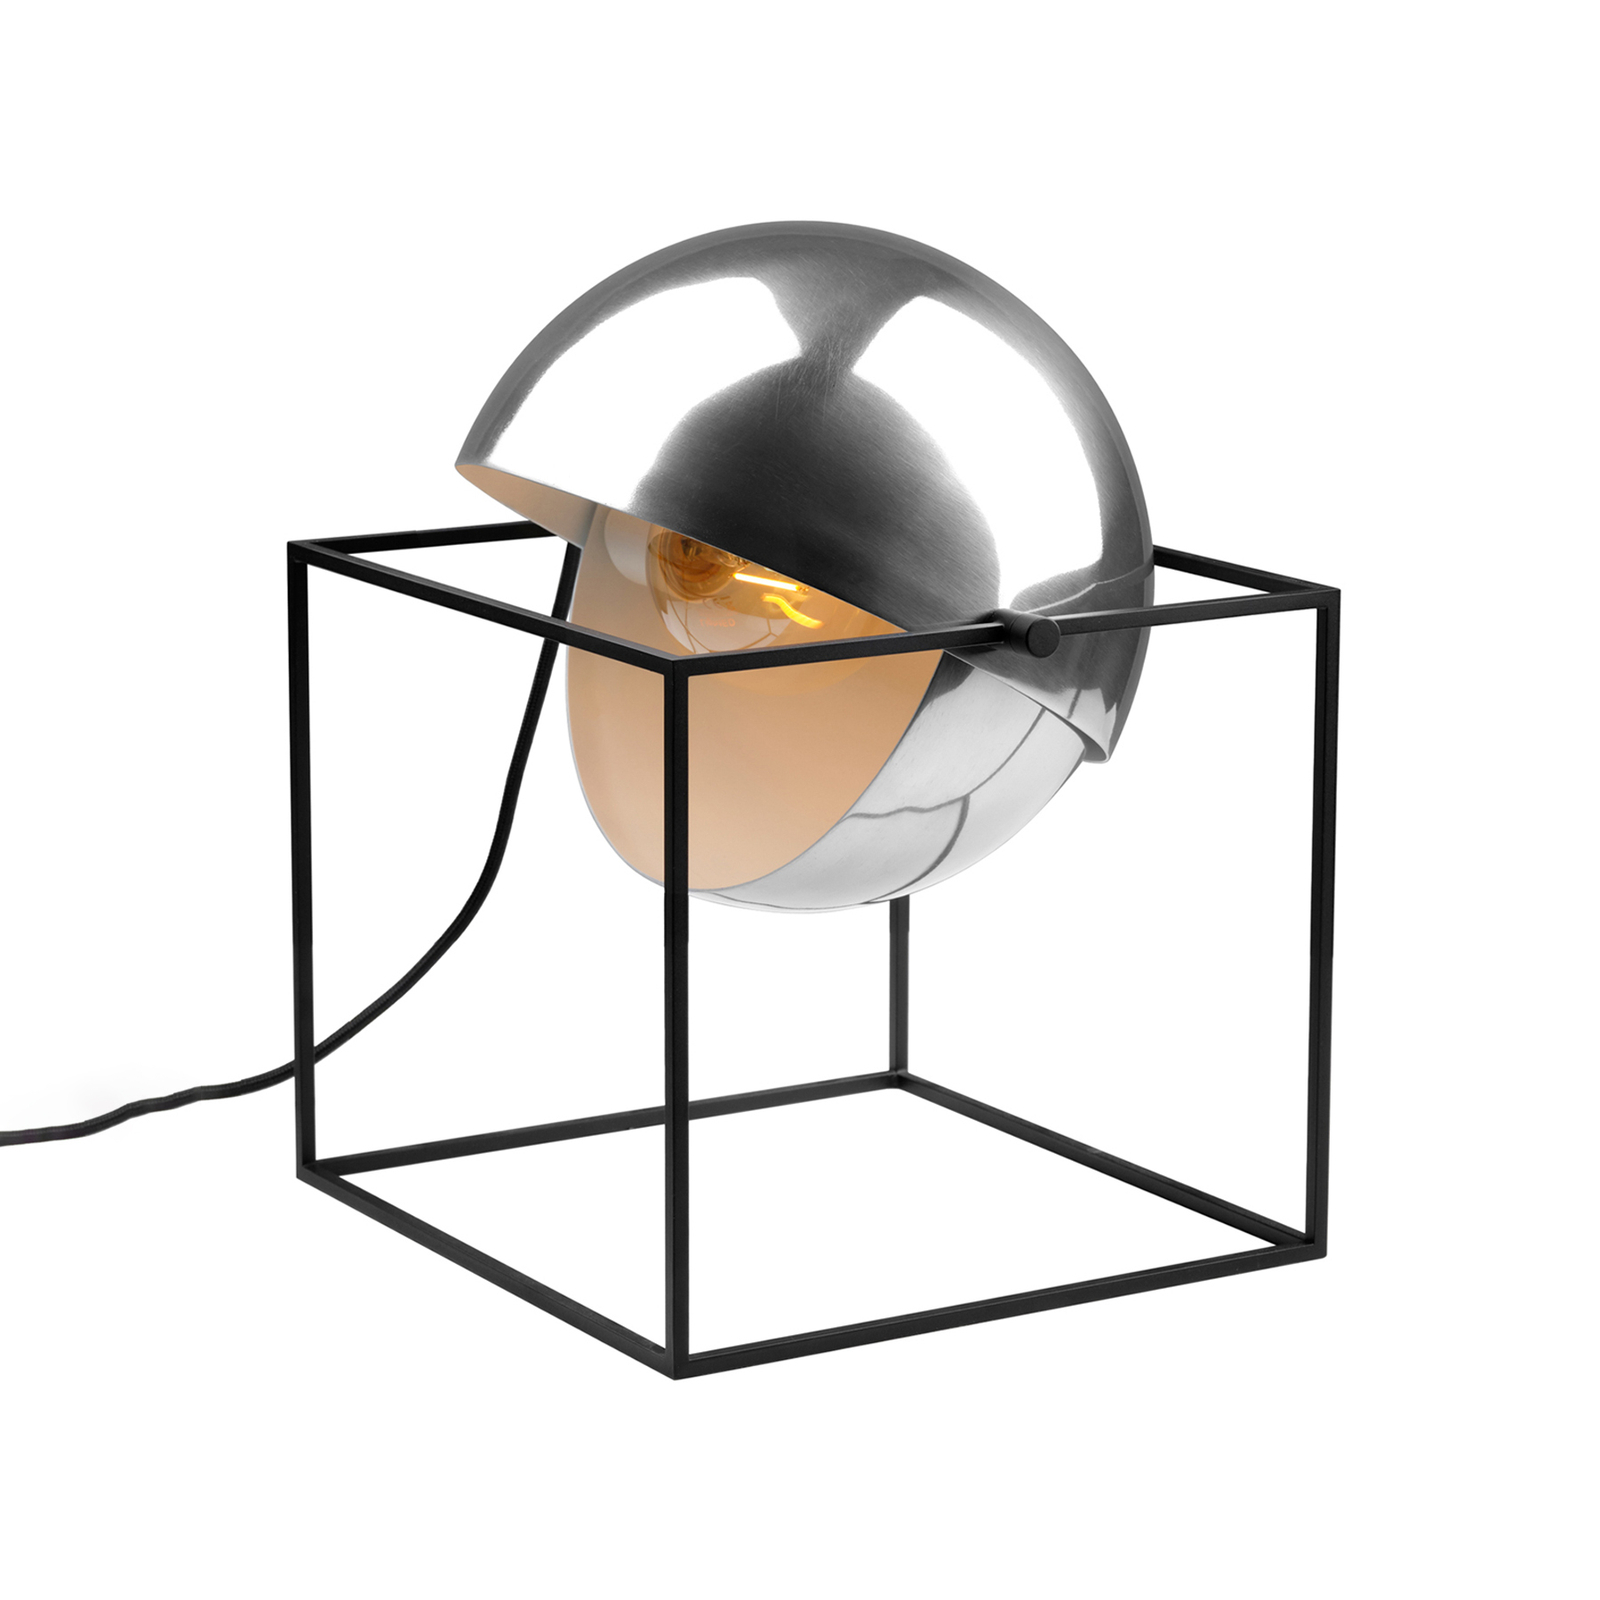 Bordslampa El Cubo med kulskärm i krom